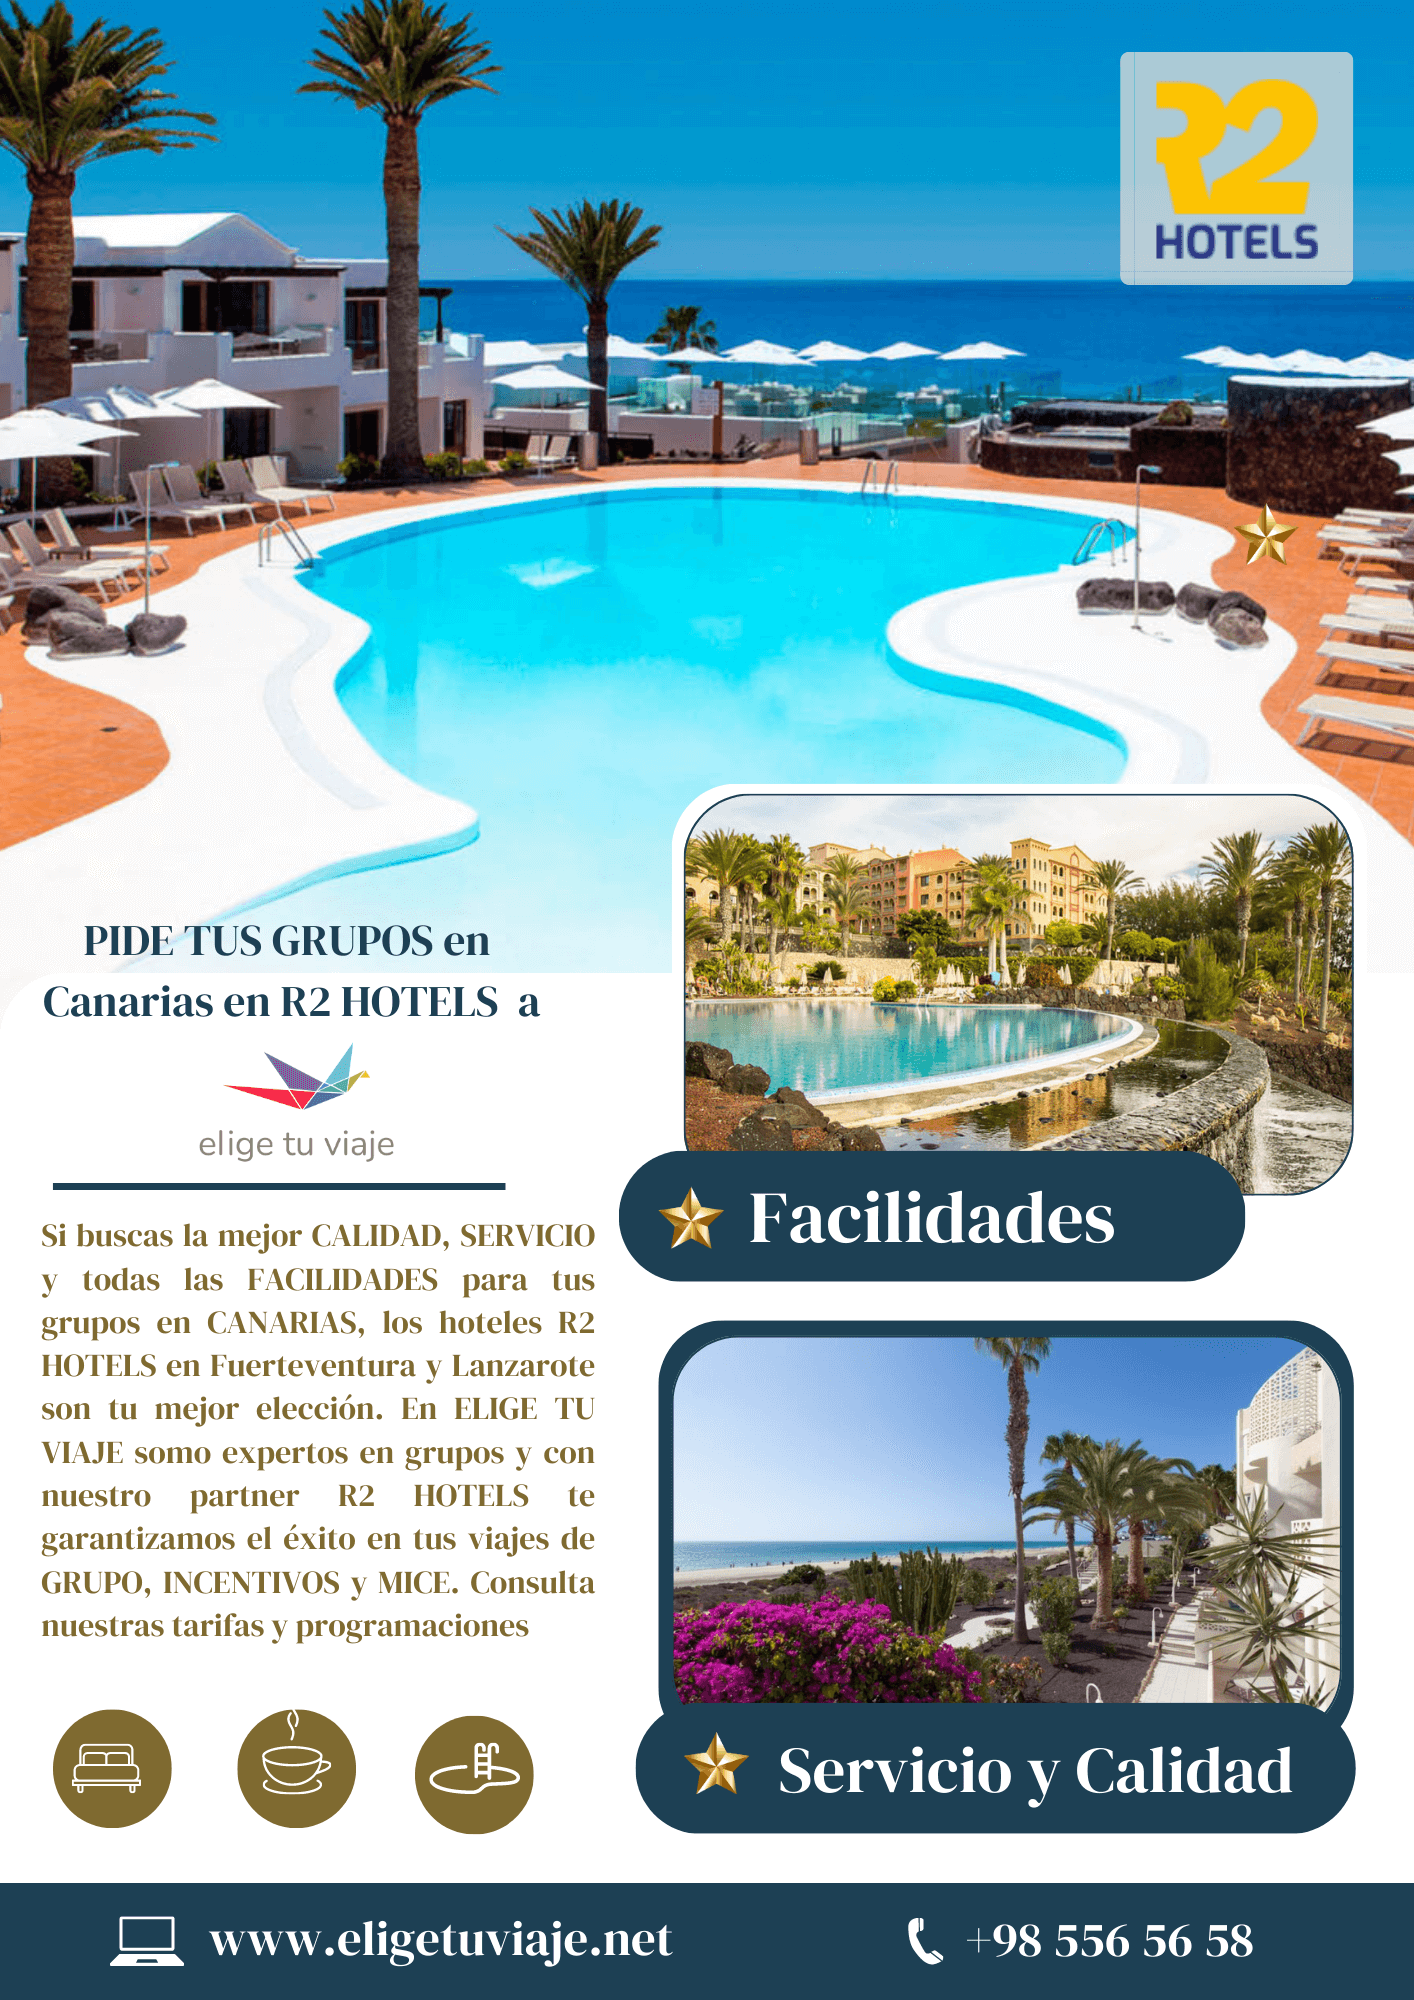 ELIGE Tus Grupos en Canarias, R2 Hotels, con Agencia de Viajes Elige tu Viaje